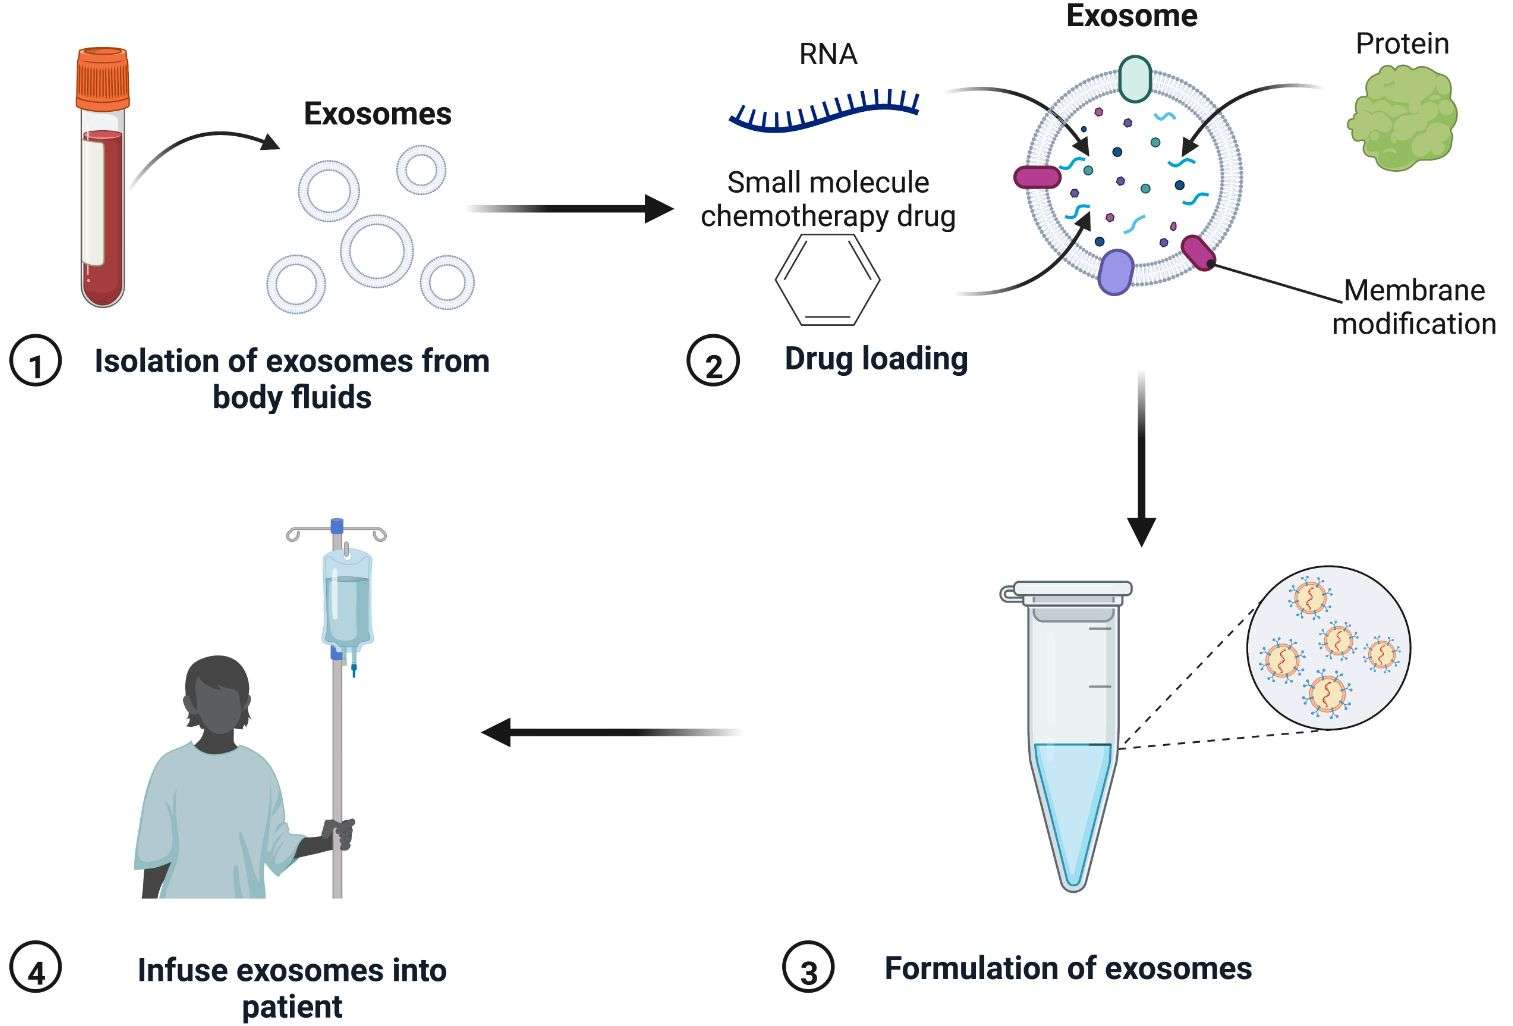 Figure 1. Exosome drug-loading process.